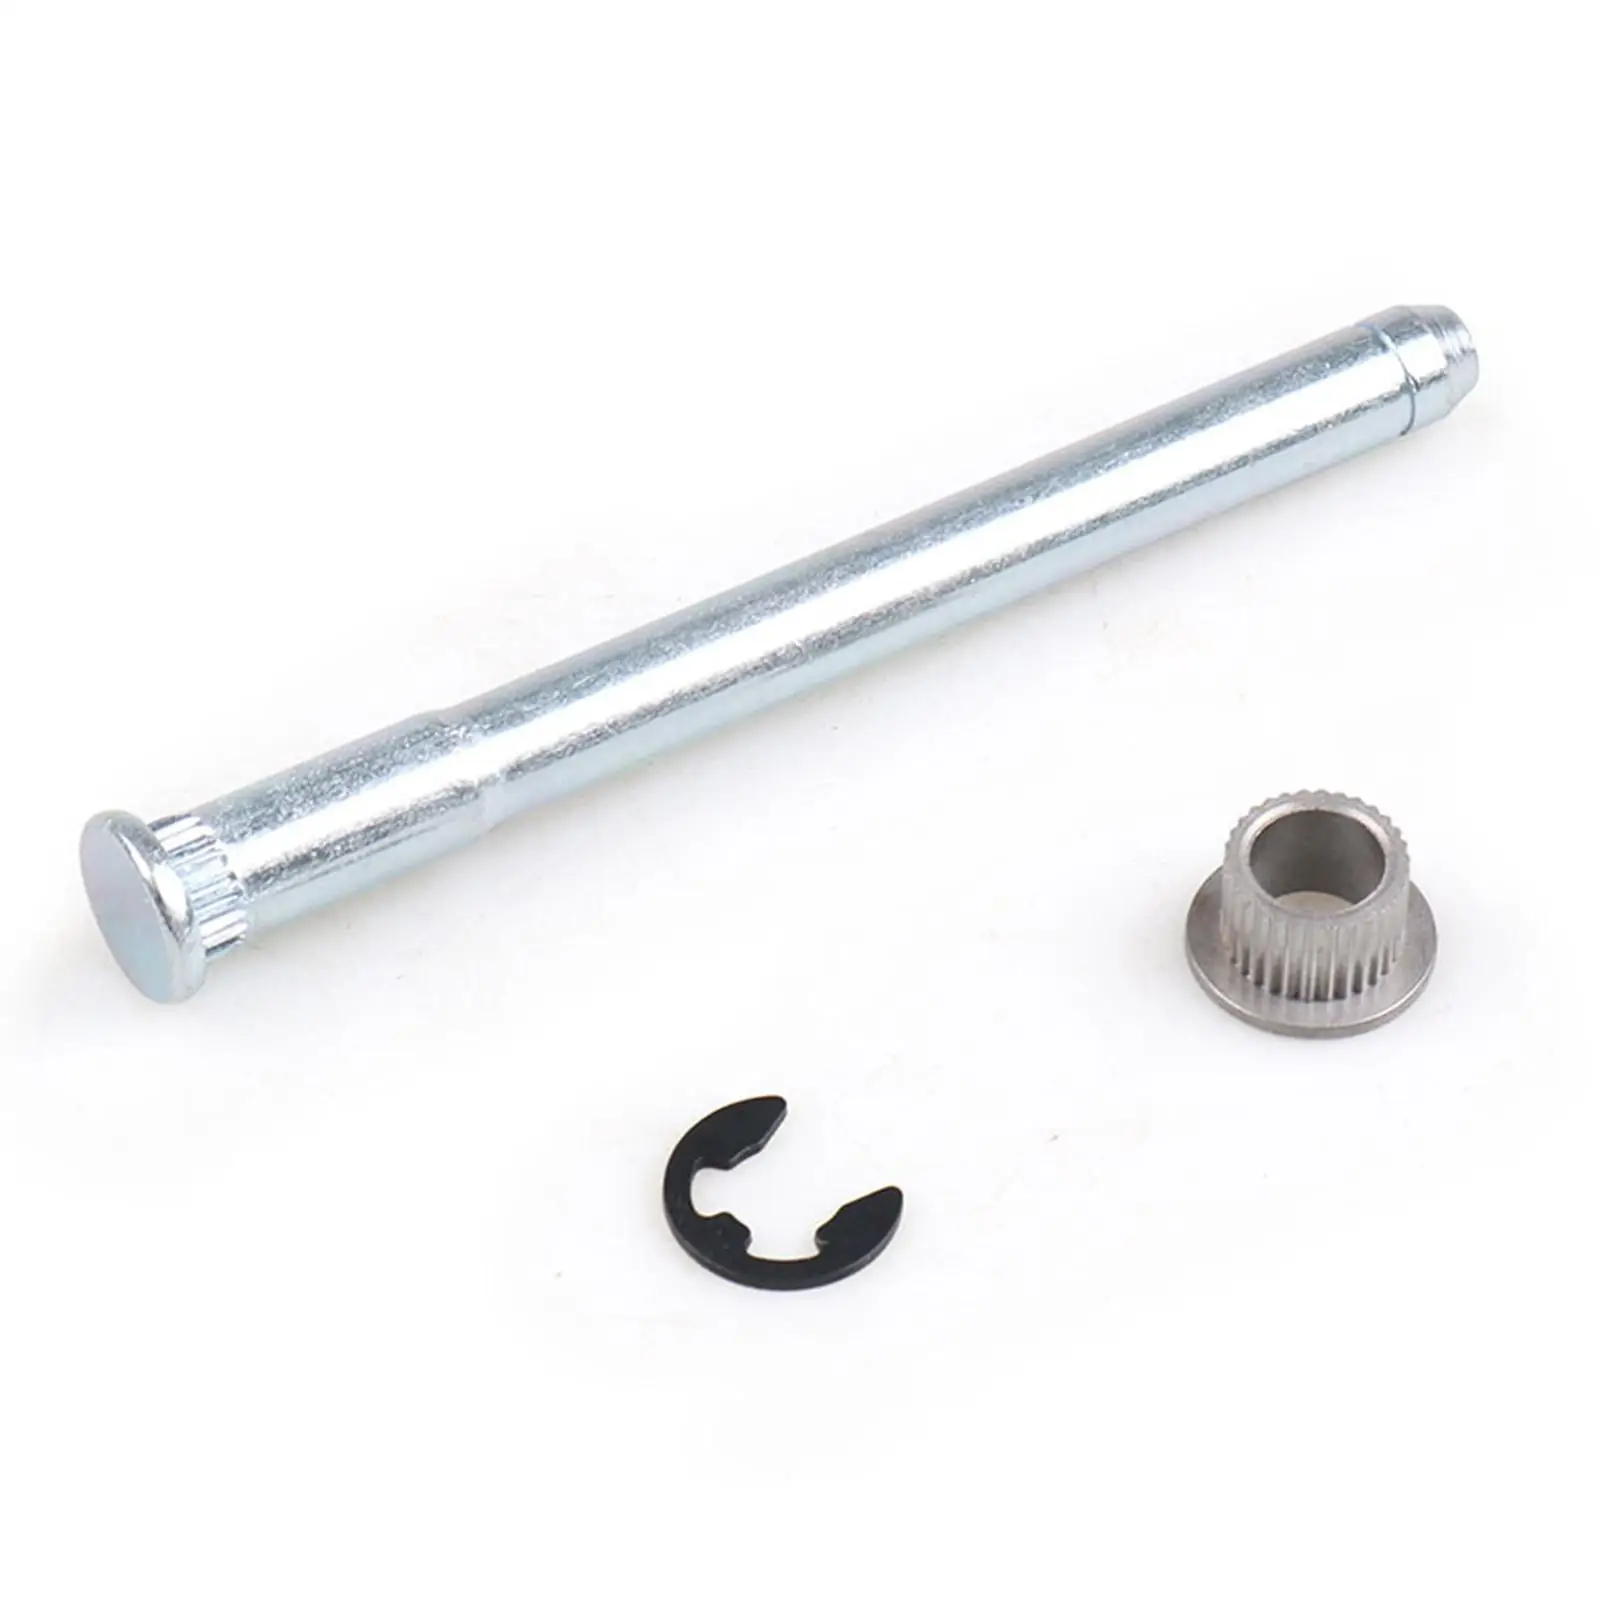 Auto Door Hinge Pins Bushing Kit 2 Door 4 Pin Door Repair Fits for S10 S15 Pickup Accessories High Quality